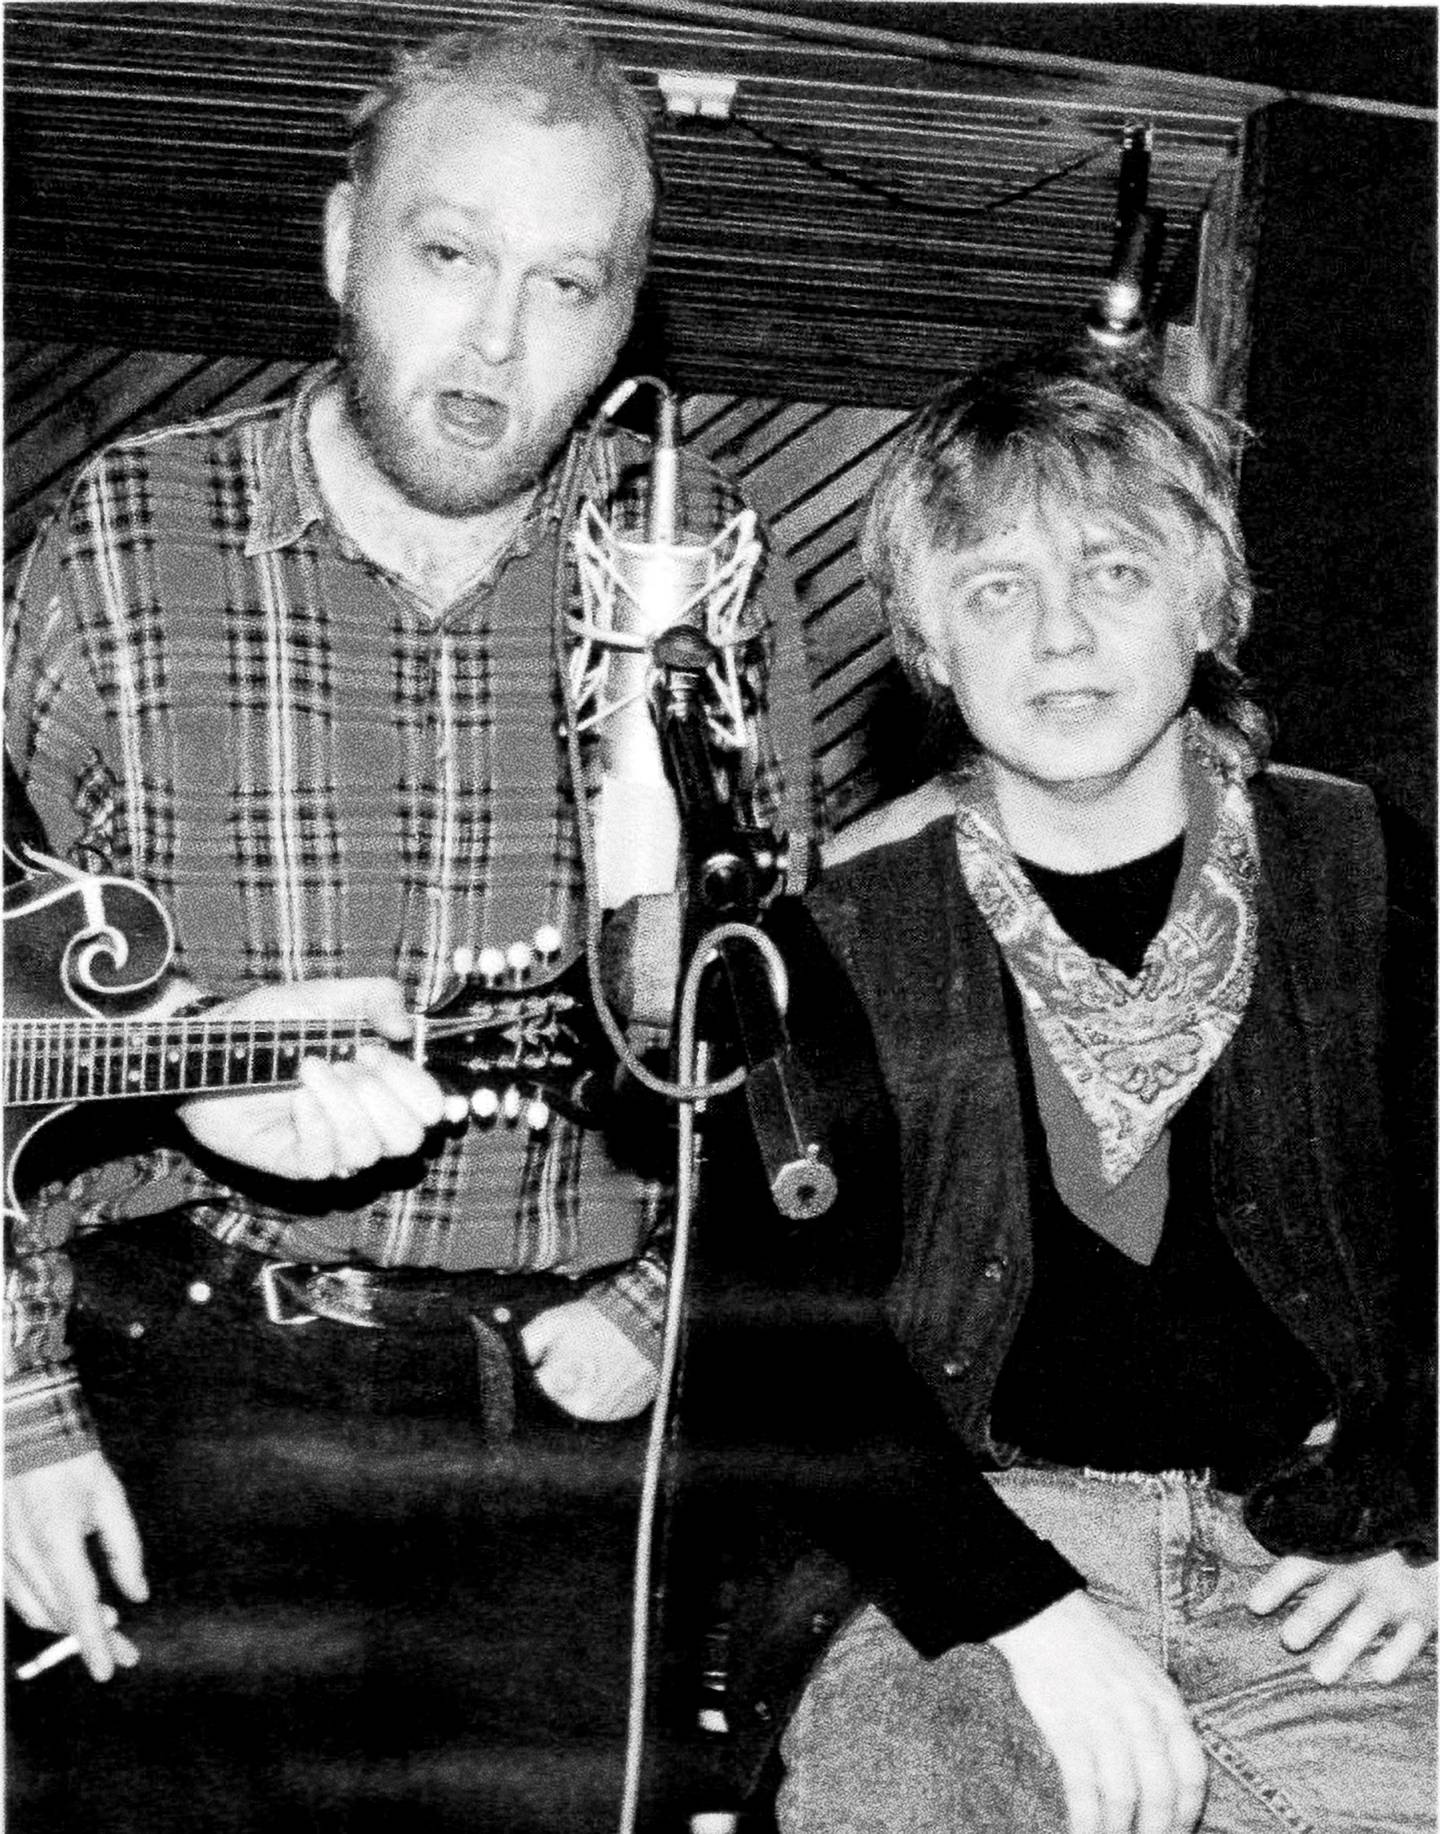 Her er Joachim «Jokke» Nielsen og Trond Granlund fotografert i forbindelse med duettsamarbeidet tilbake i 1995. Foto: Knut Erik Knudsen / handout